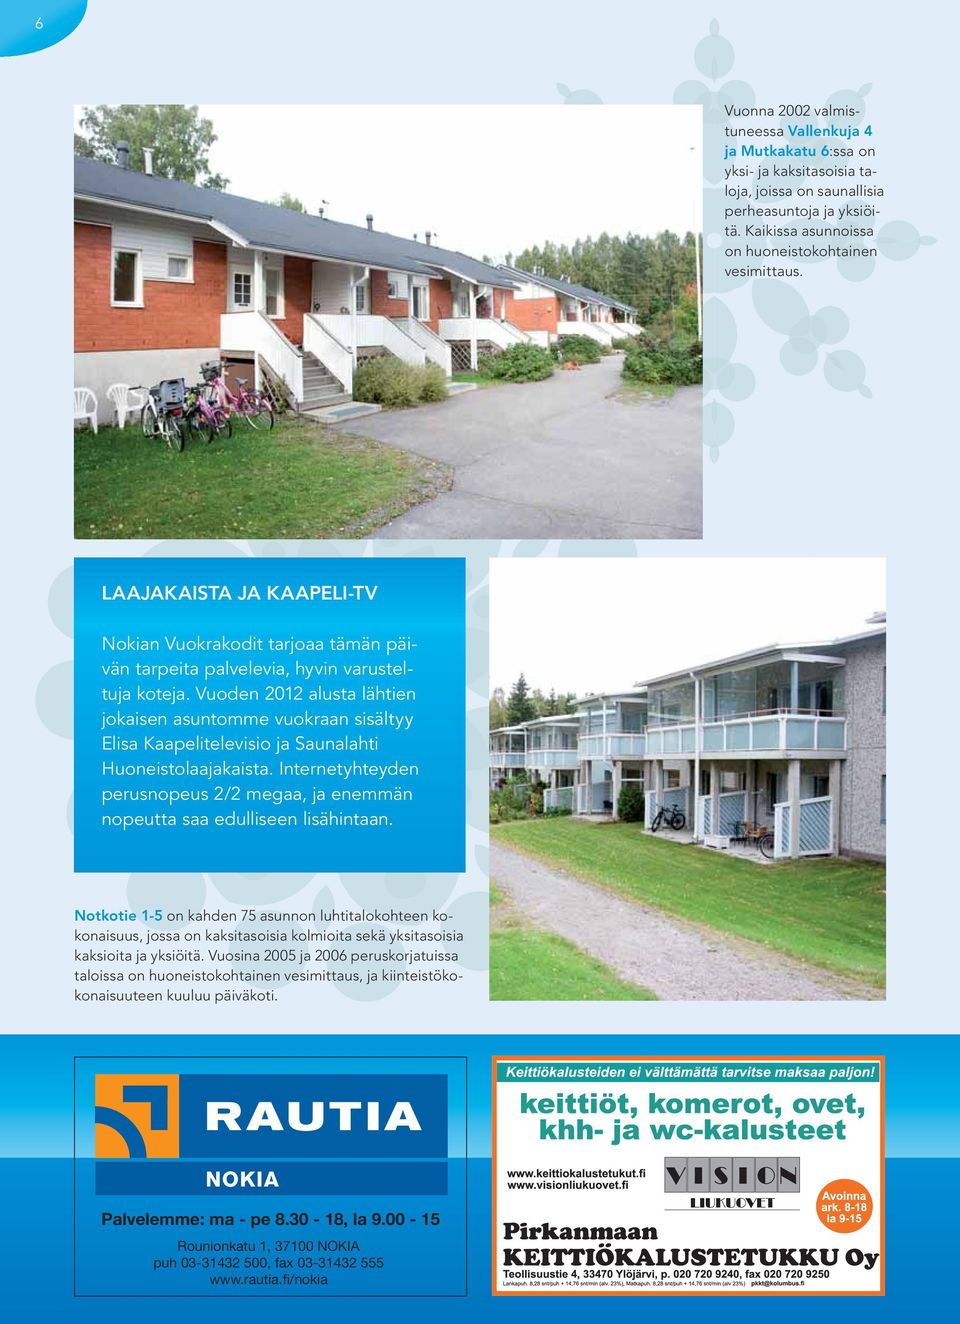 Vuoden 2012 alusta lähtien jokaisen asuntomme vuokraan sisältyy Elisa Kaapelitelevisio ja Saunalahti Huoneistolaajakaista.